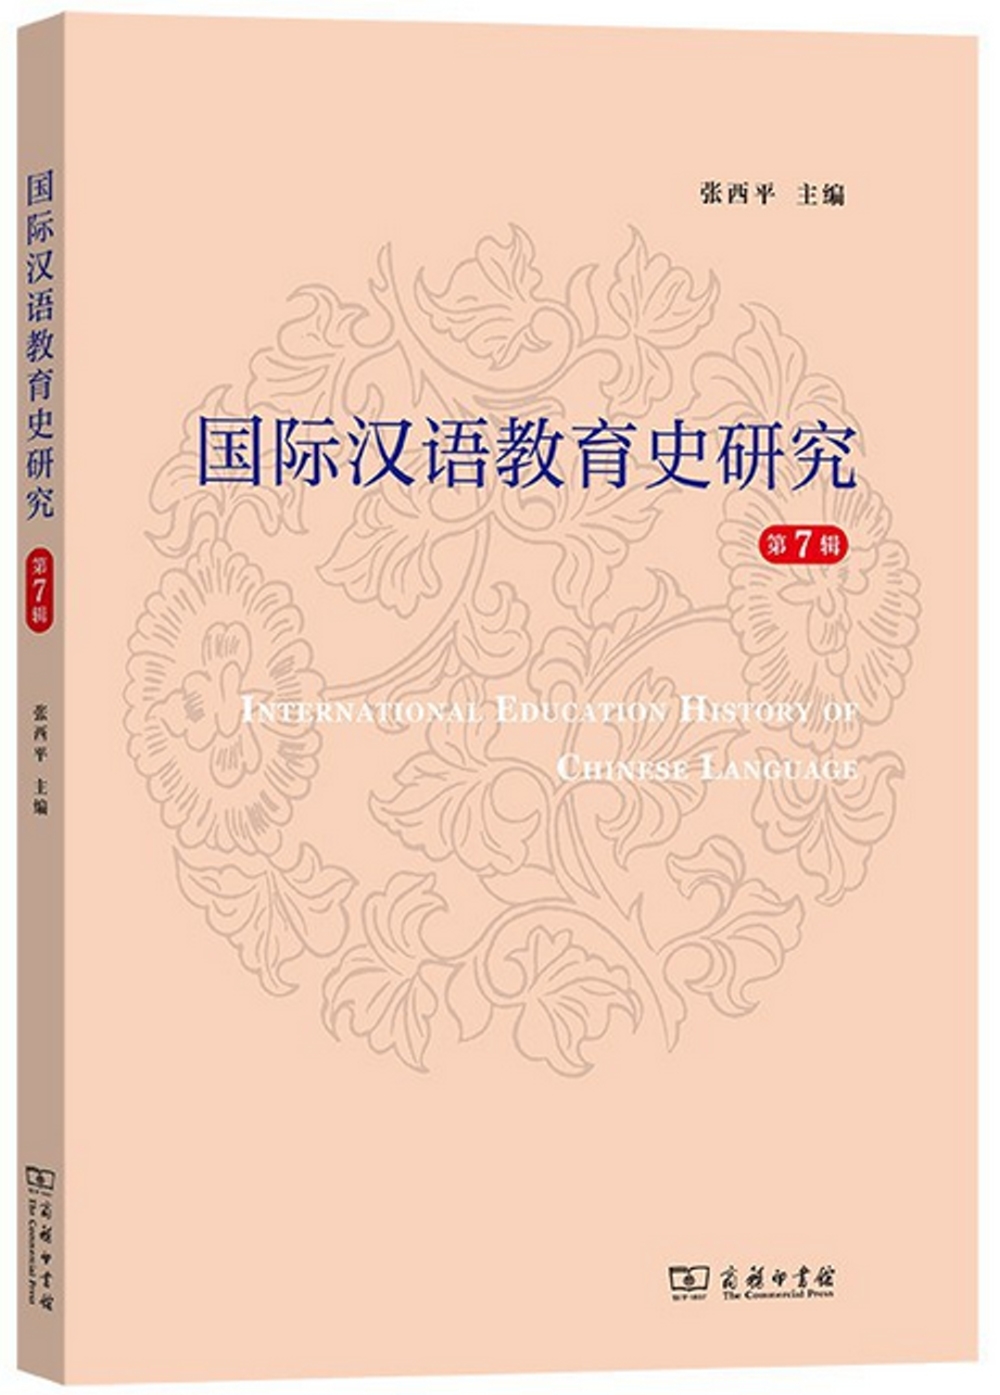 國際漢語教育史研究（第7輯）